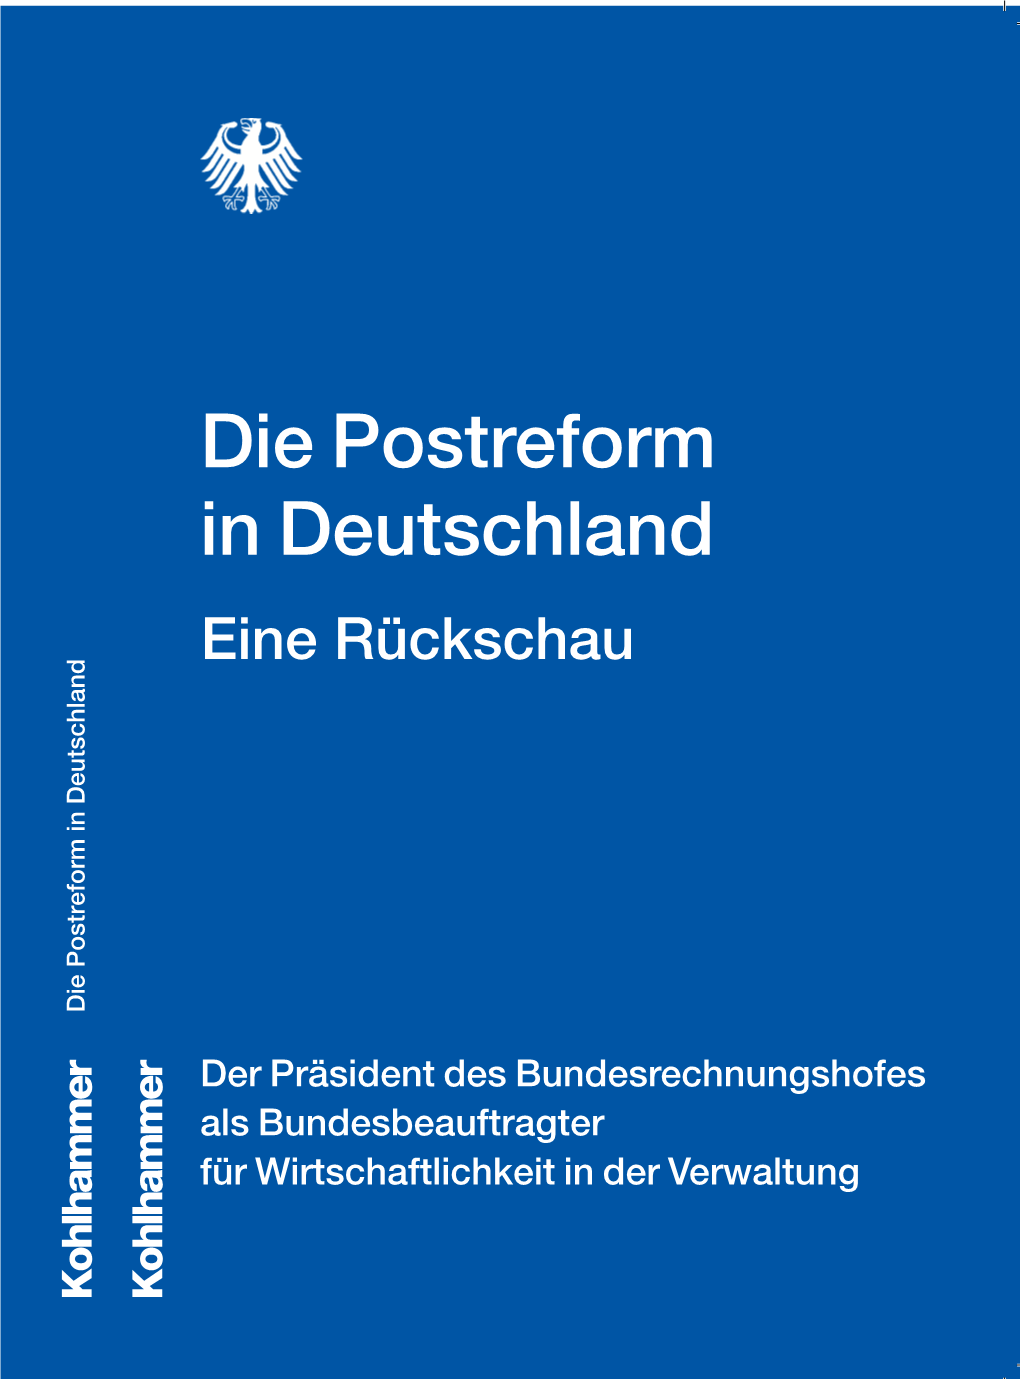 Die Postreform in Deutschland